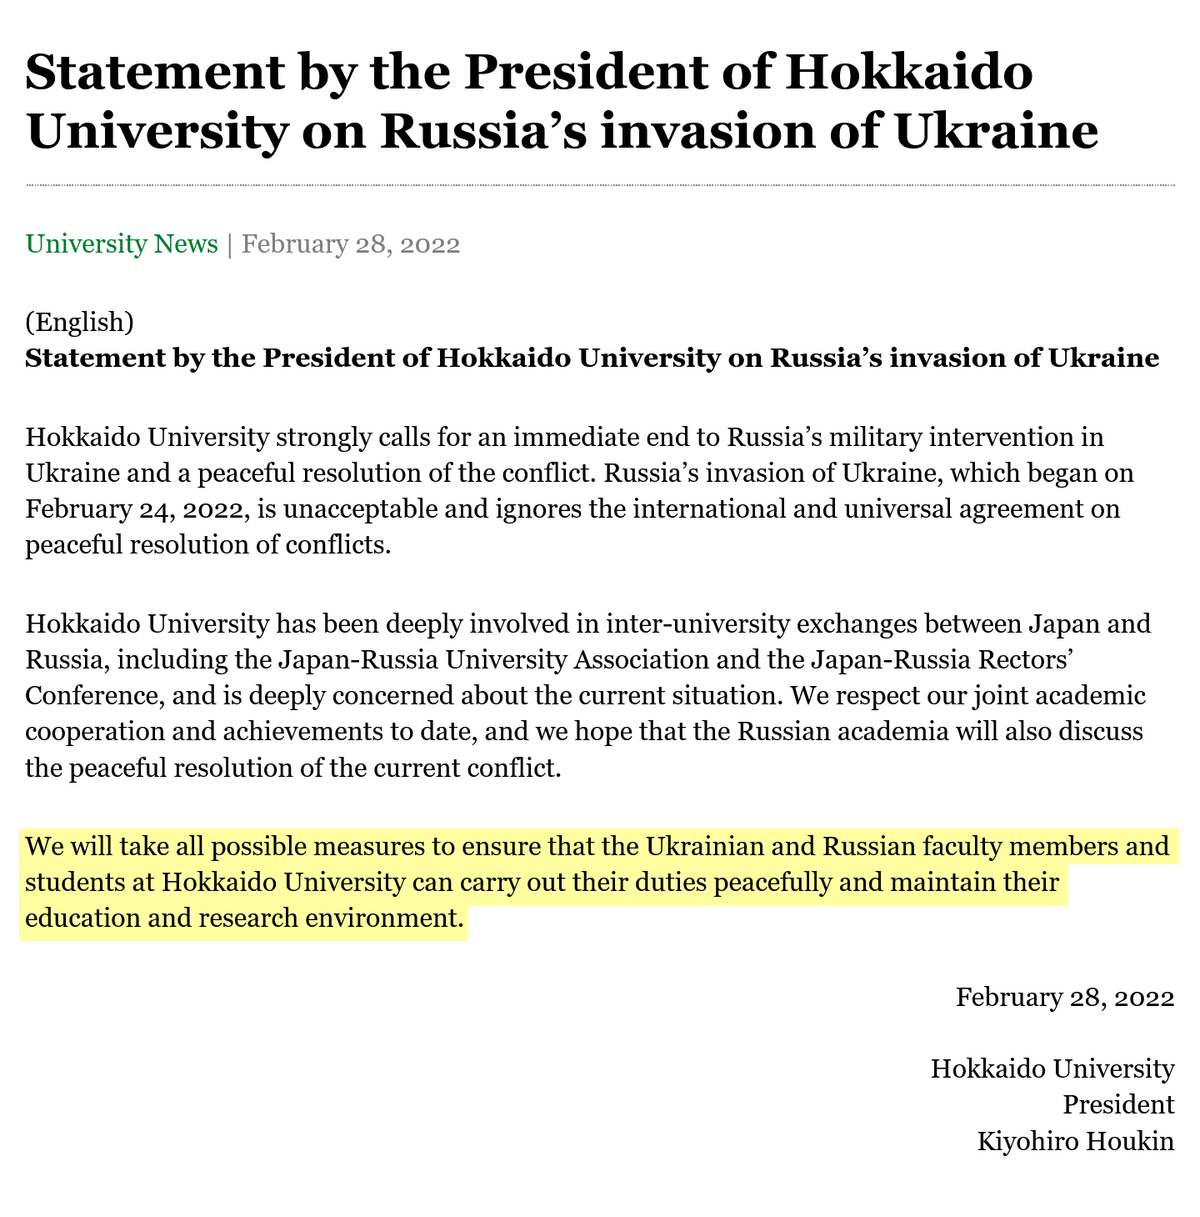 Президент Университета Хоккайдо выпустил заявление, в котором отметил, что университет сделает все возможное, чтобы ученые и студенты из России и Украины могли продолжать свою деятельность